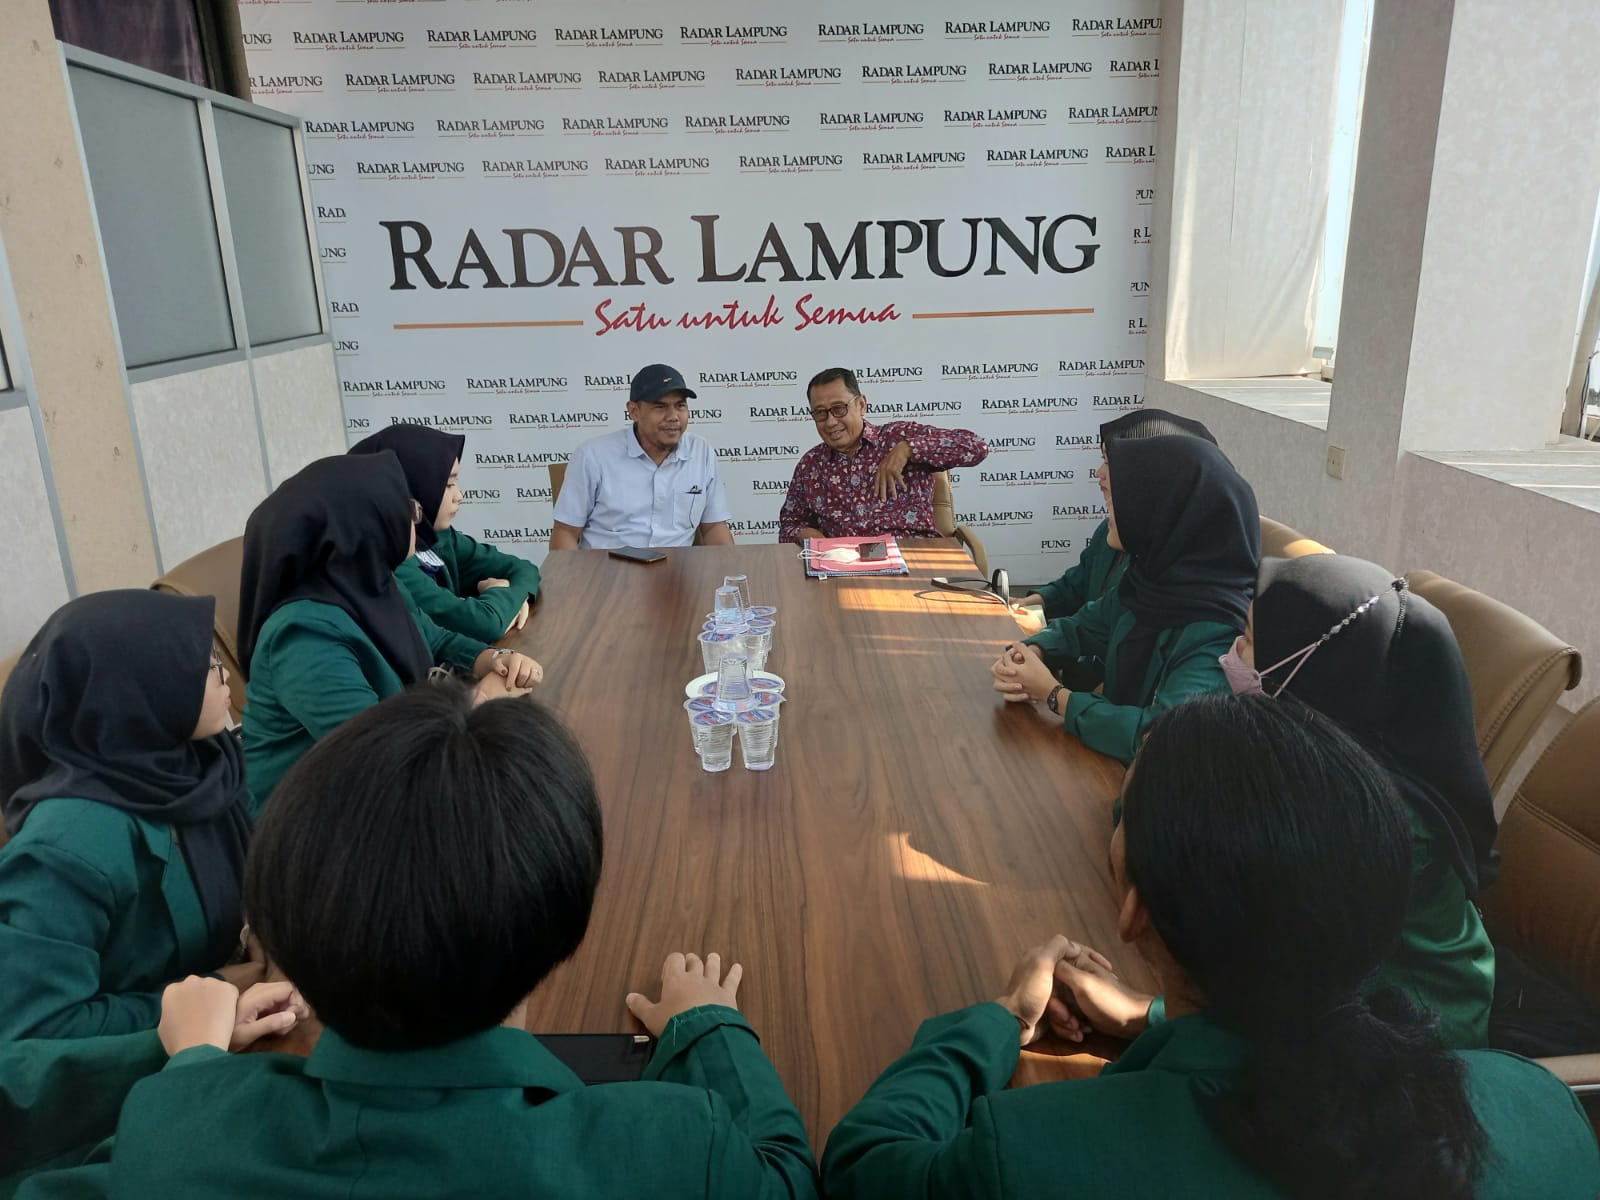 UML Gandeng Radar Lampung Group untuk Program MBKM 